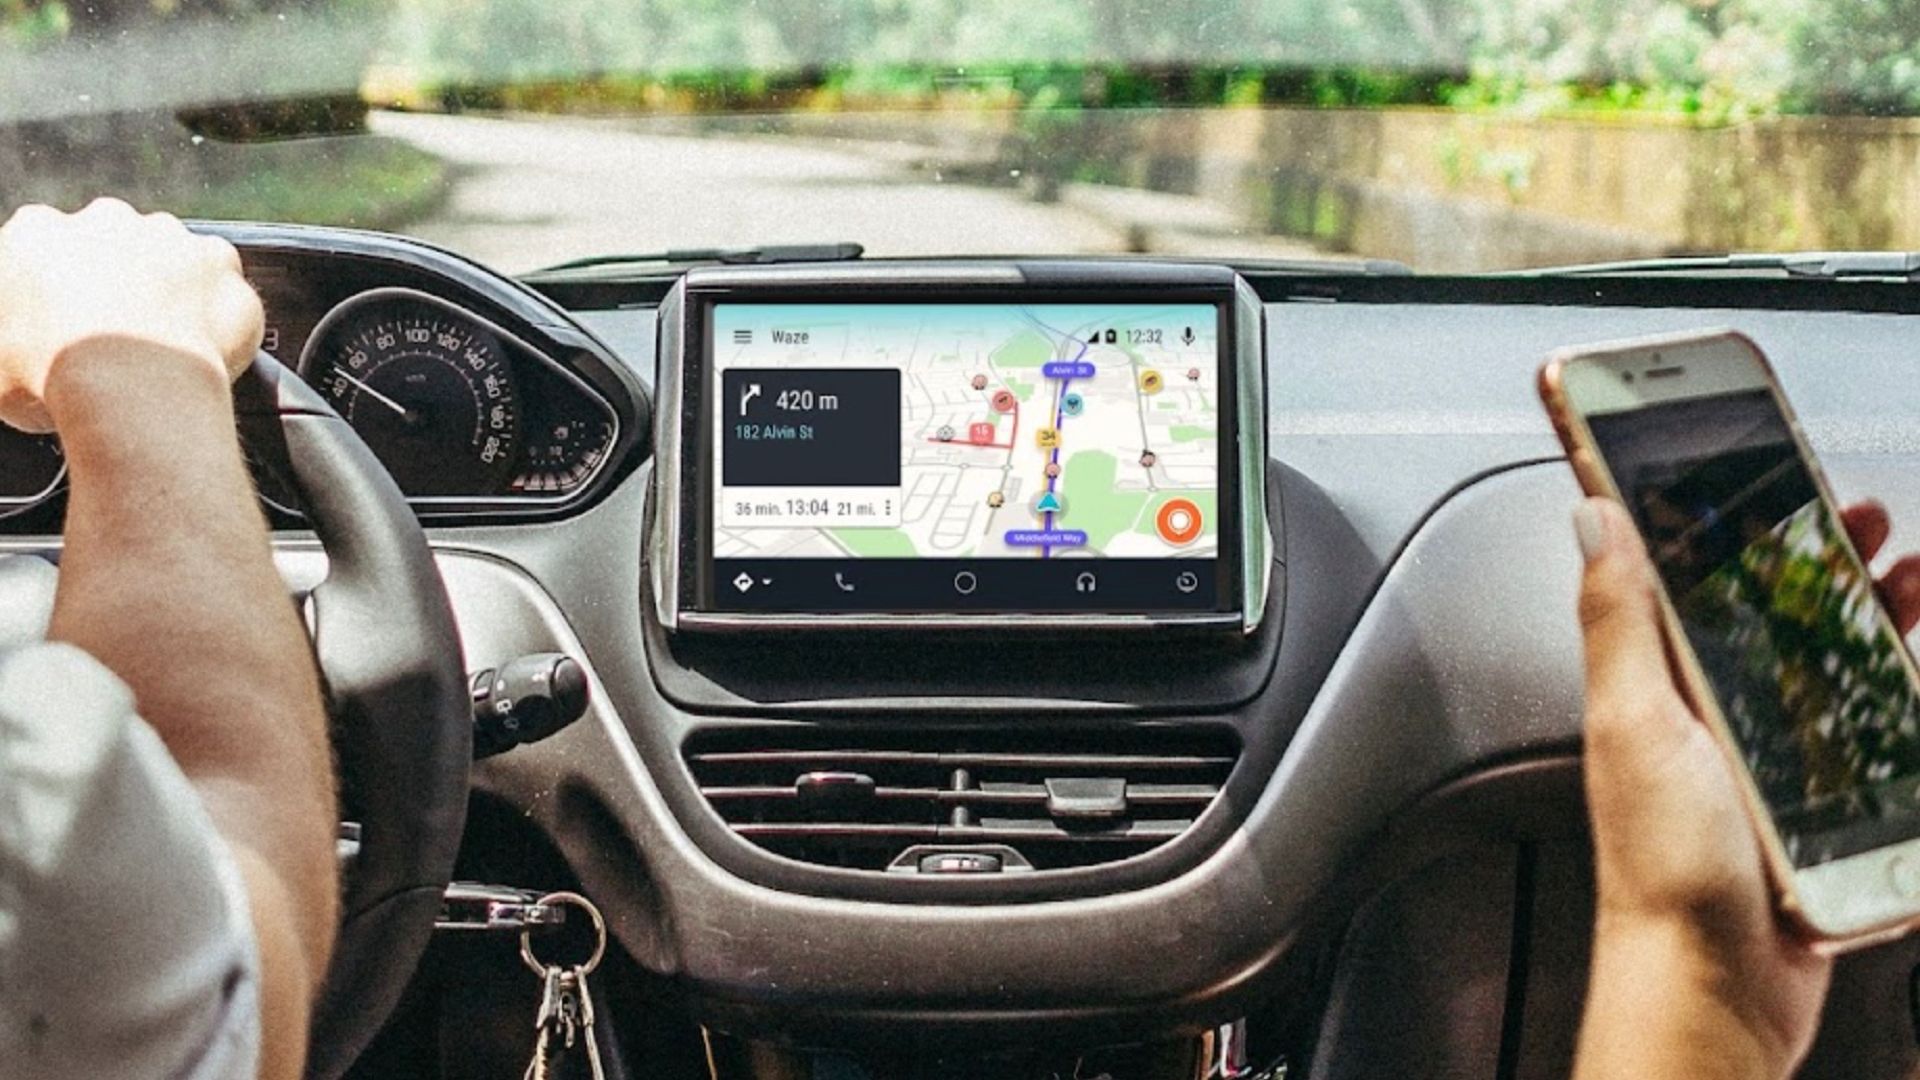 Waze running on a car infotainment screen. 